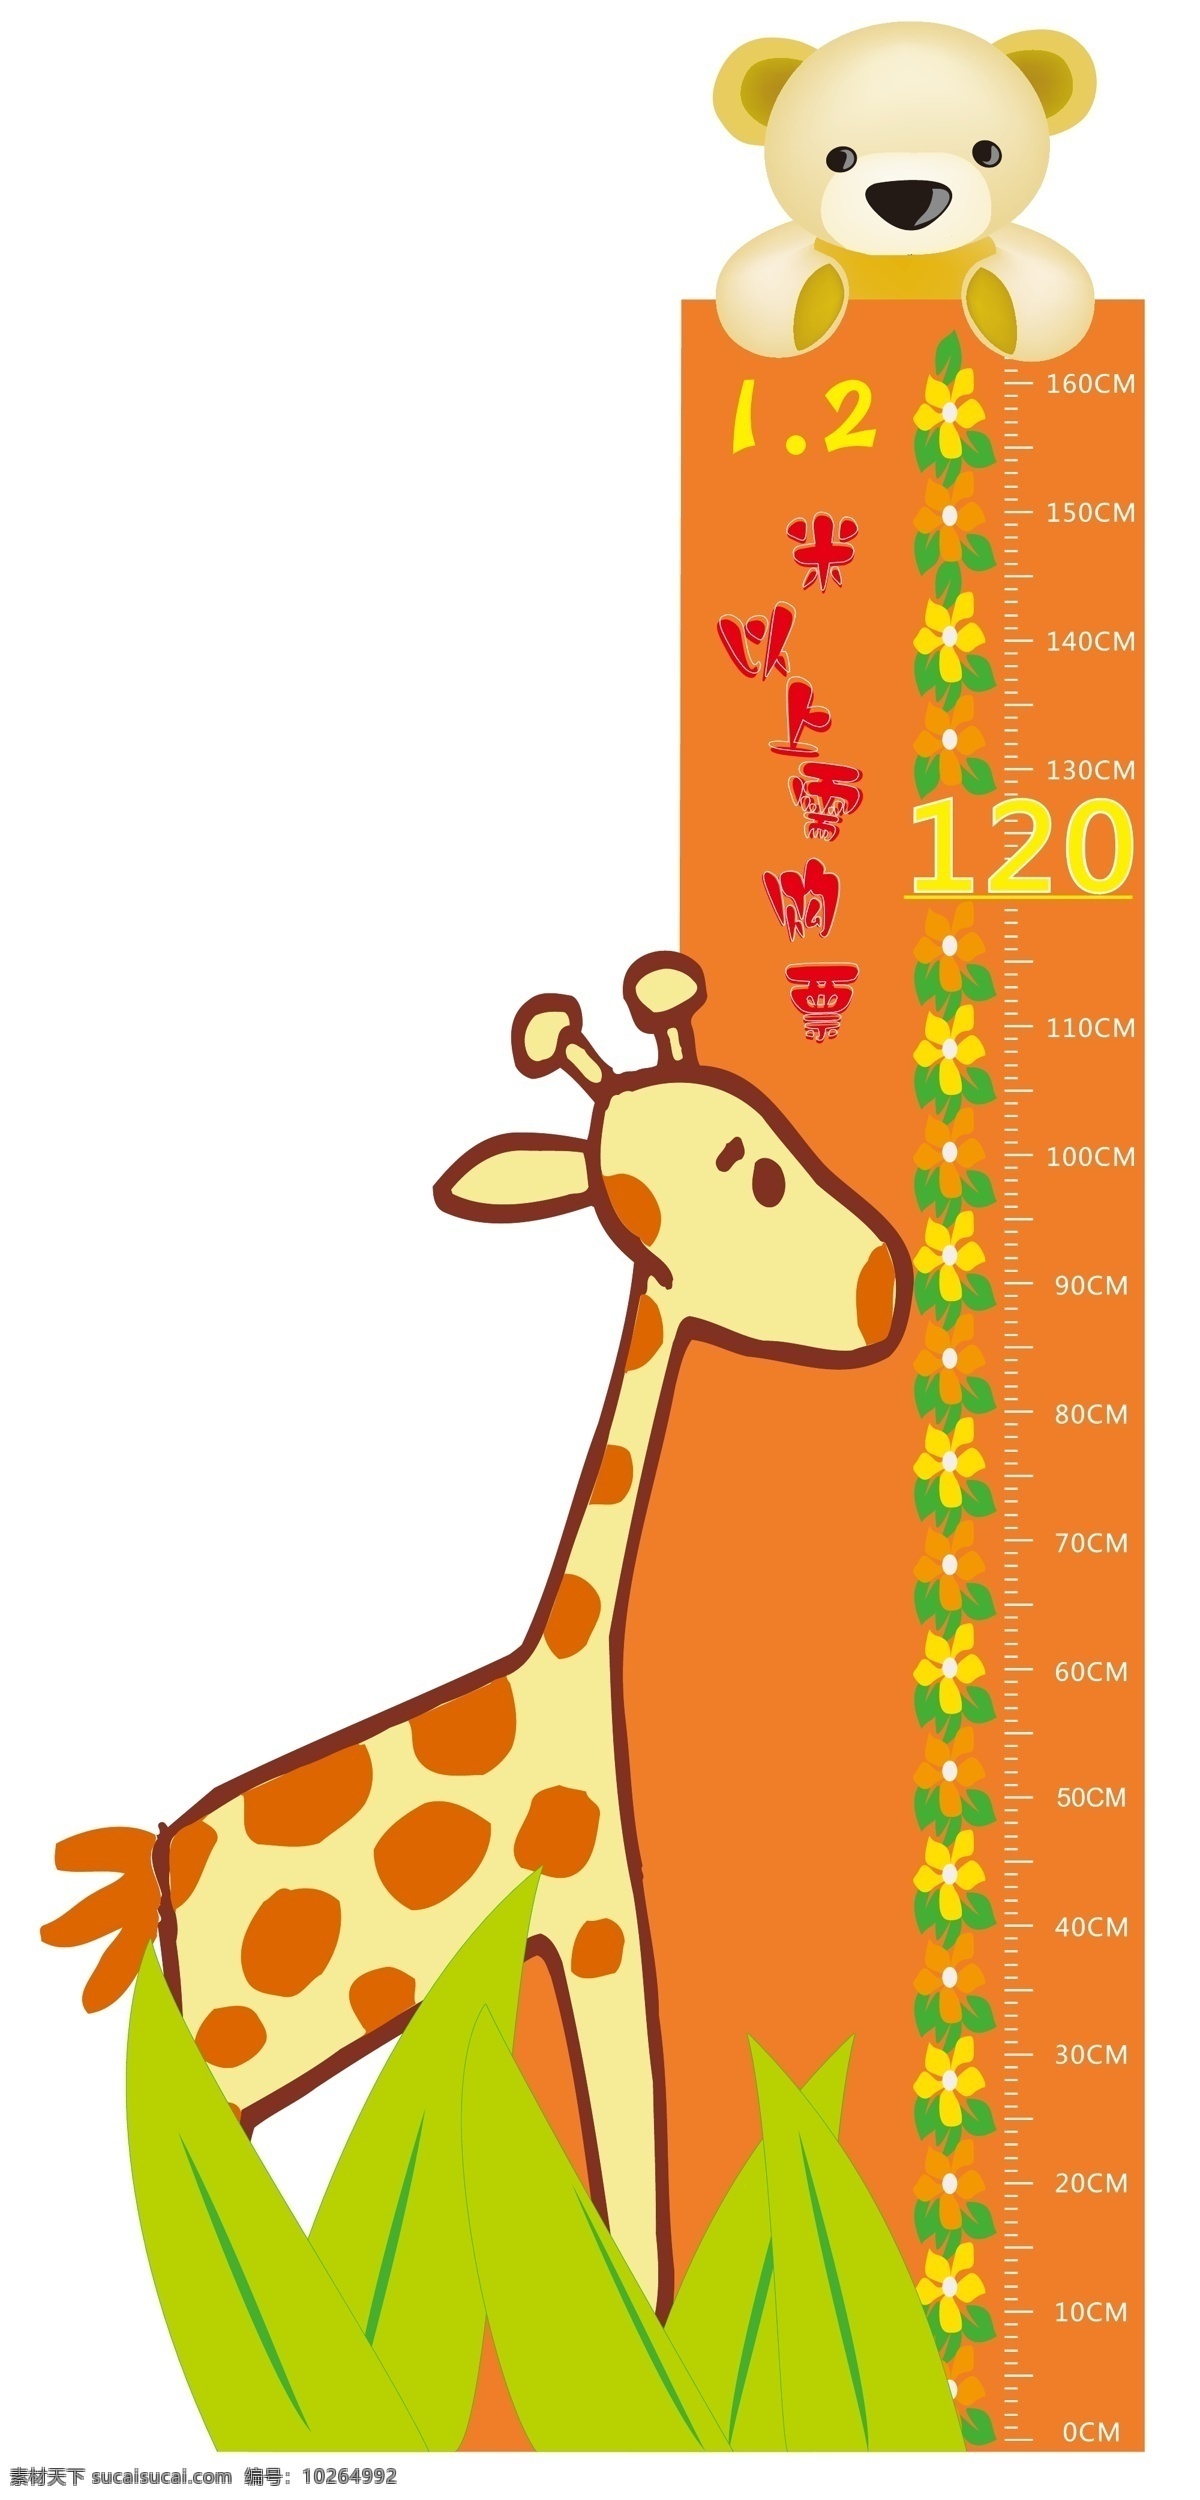 身高测量尺 身高 长颈鹿 小熊 熊 花 买票标准 尺 刻度 矢量 其他设计